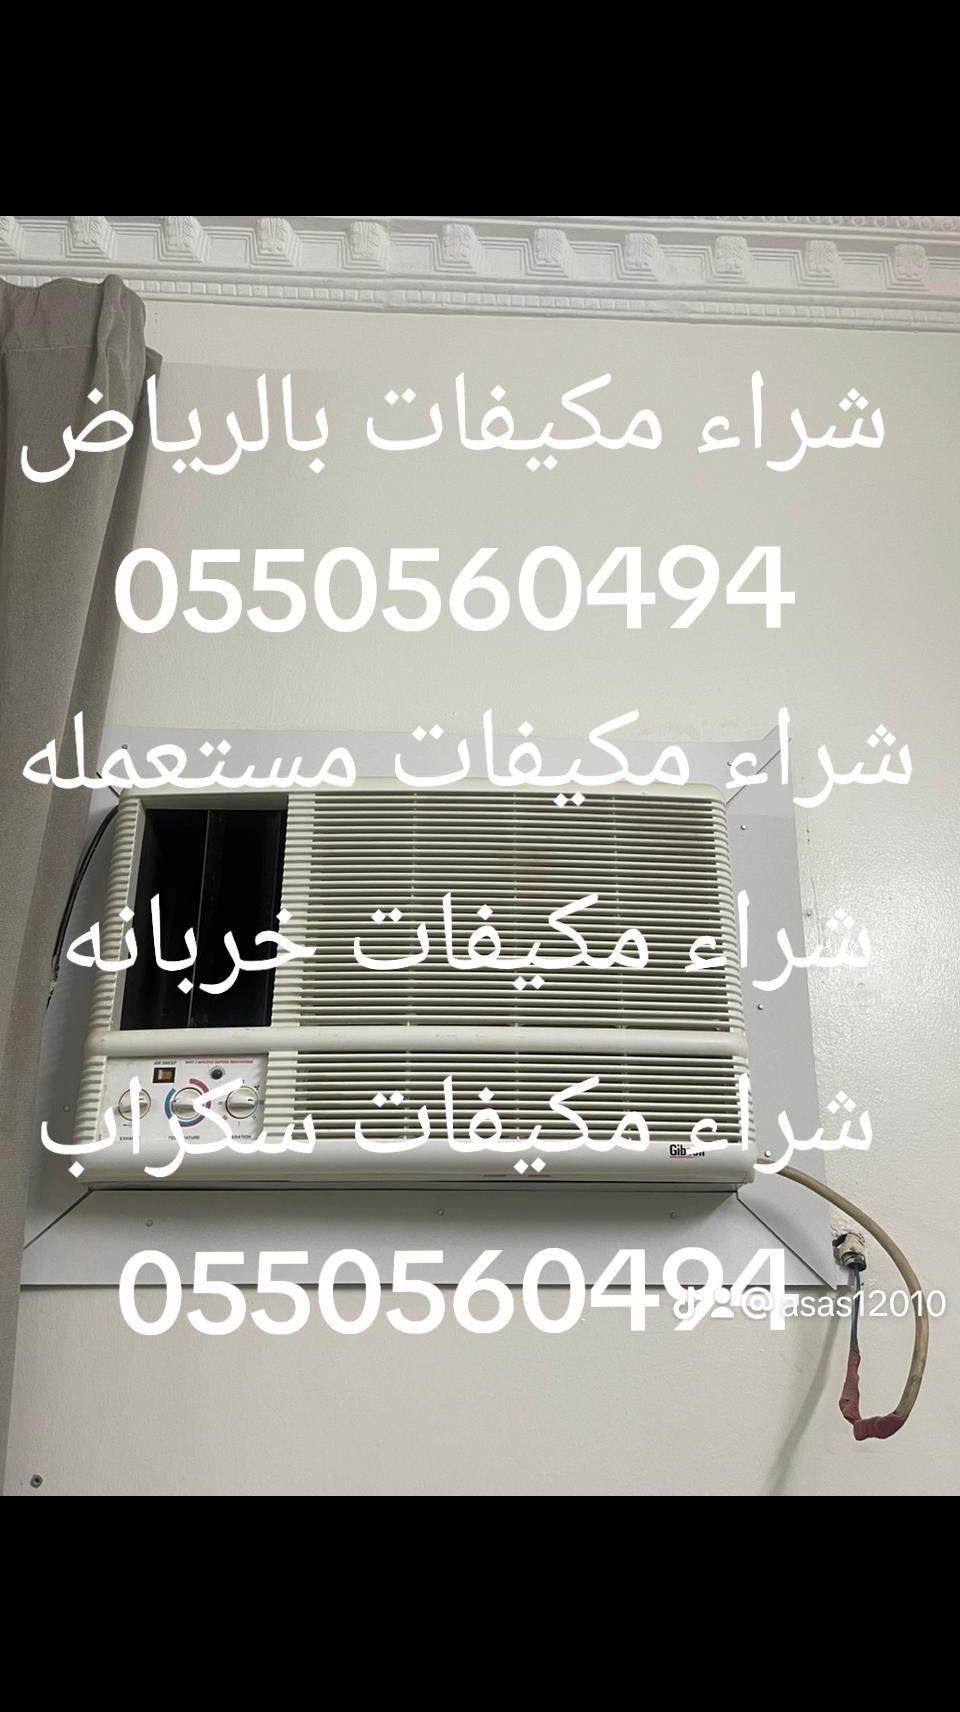 شراء اثاث مستعمل شرق الرياض 0550560494